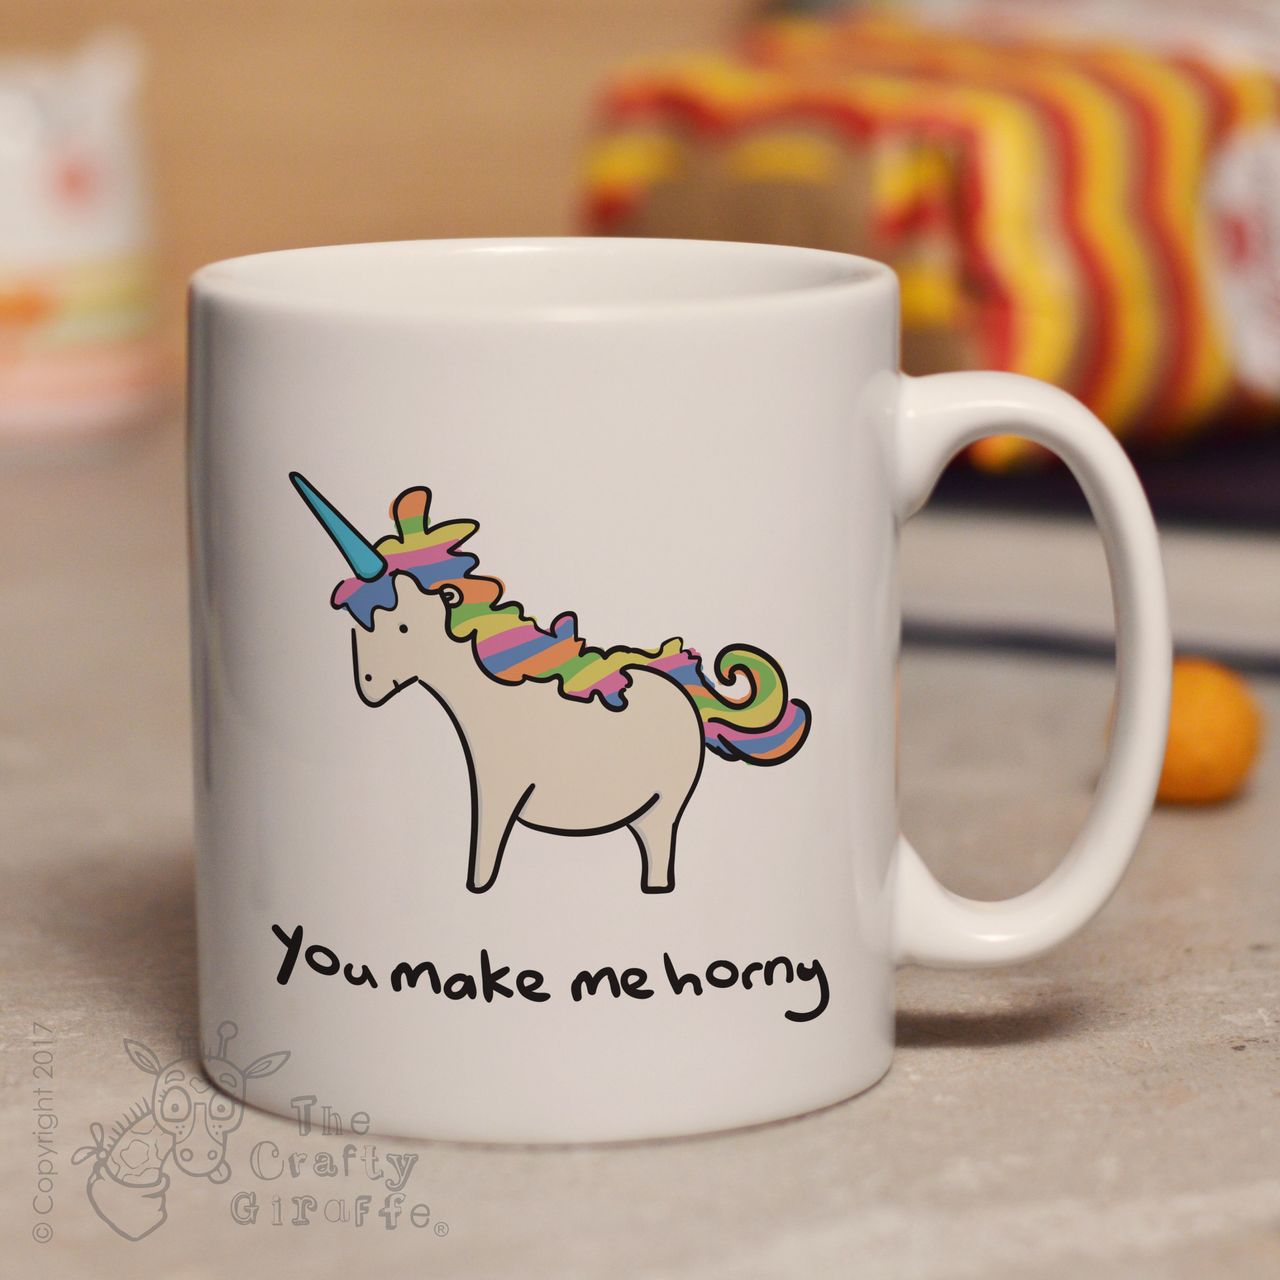 You make me horny mug